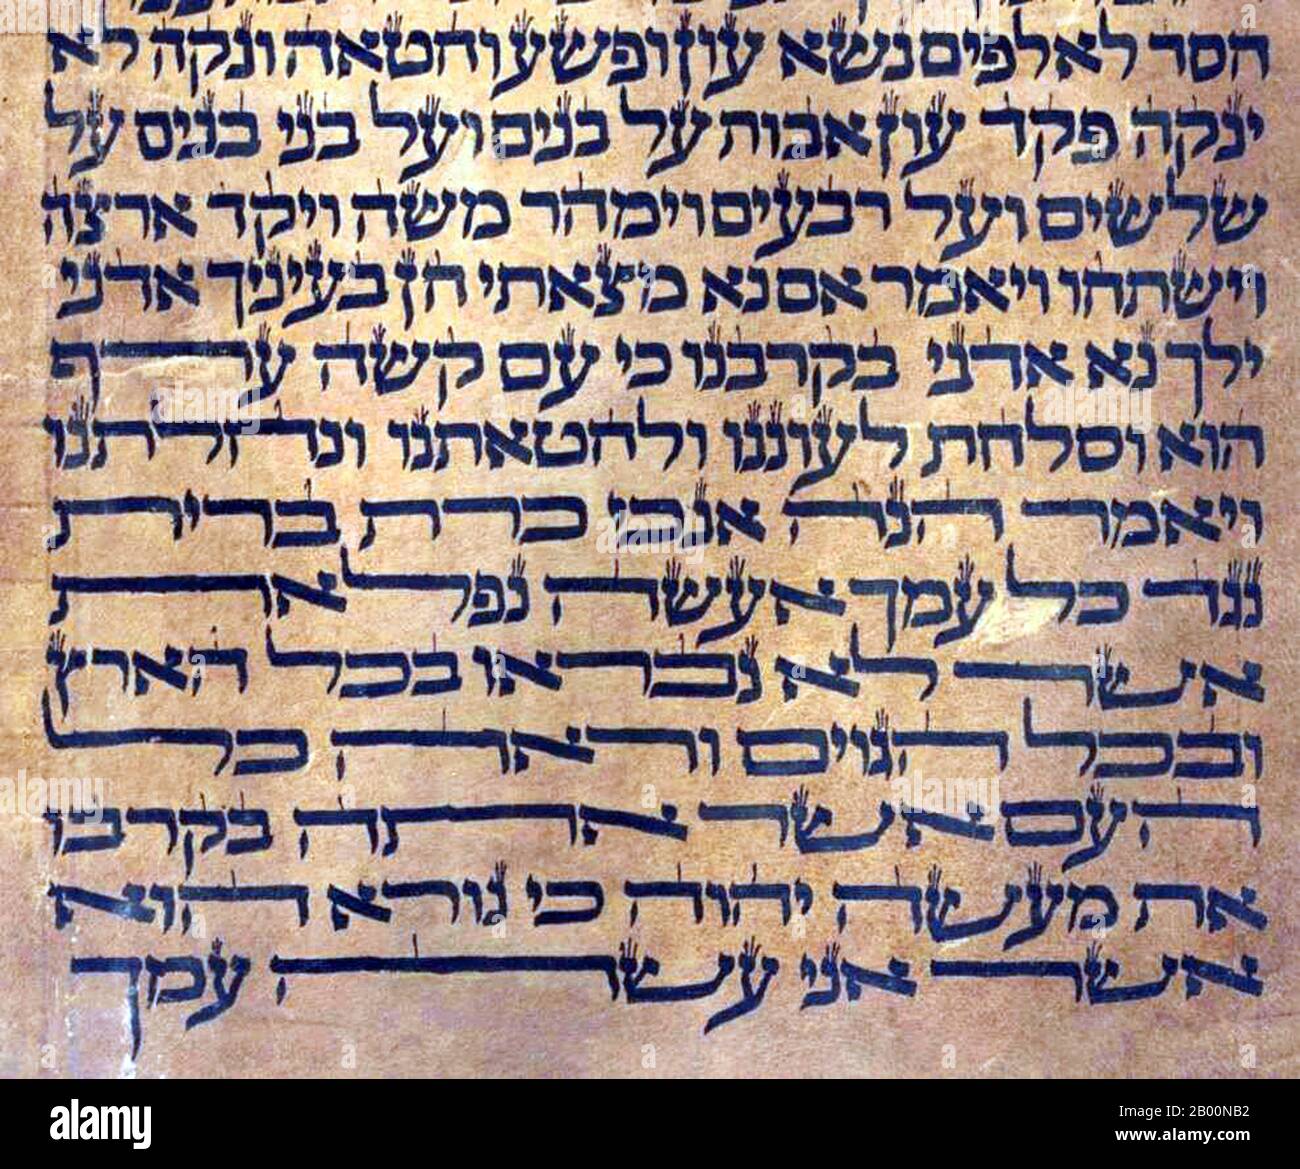 Espagne: Le Sefer Torah. Le style hébreu d'écriture et d'espacement remonte à l'époque des Maimonides du XIIe siècle, et confirme son origine sépharade de la péninsule ibérique. Moses ben-Maimon, appelé Maimonides et également connu sous le nom de Rambam (acronyme hébreu de 'Rabbi Moshe ben Maimon'), était un philosophe juif médiéval prééminent et l'un des plus grands érudits et médecins de la Torah du Moyen-âge. Il est né à Córdoba, en Espagne, à la veille de la Pâque, en 1135, et est mort en Égypte (ou Tibérias) le 20 Tevet, le 12 décembre 1204. Il était rabbin, médecin et philosophe au Maroc et en Égypte. Banque D'Images